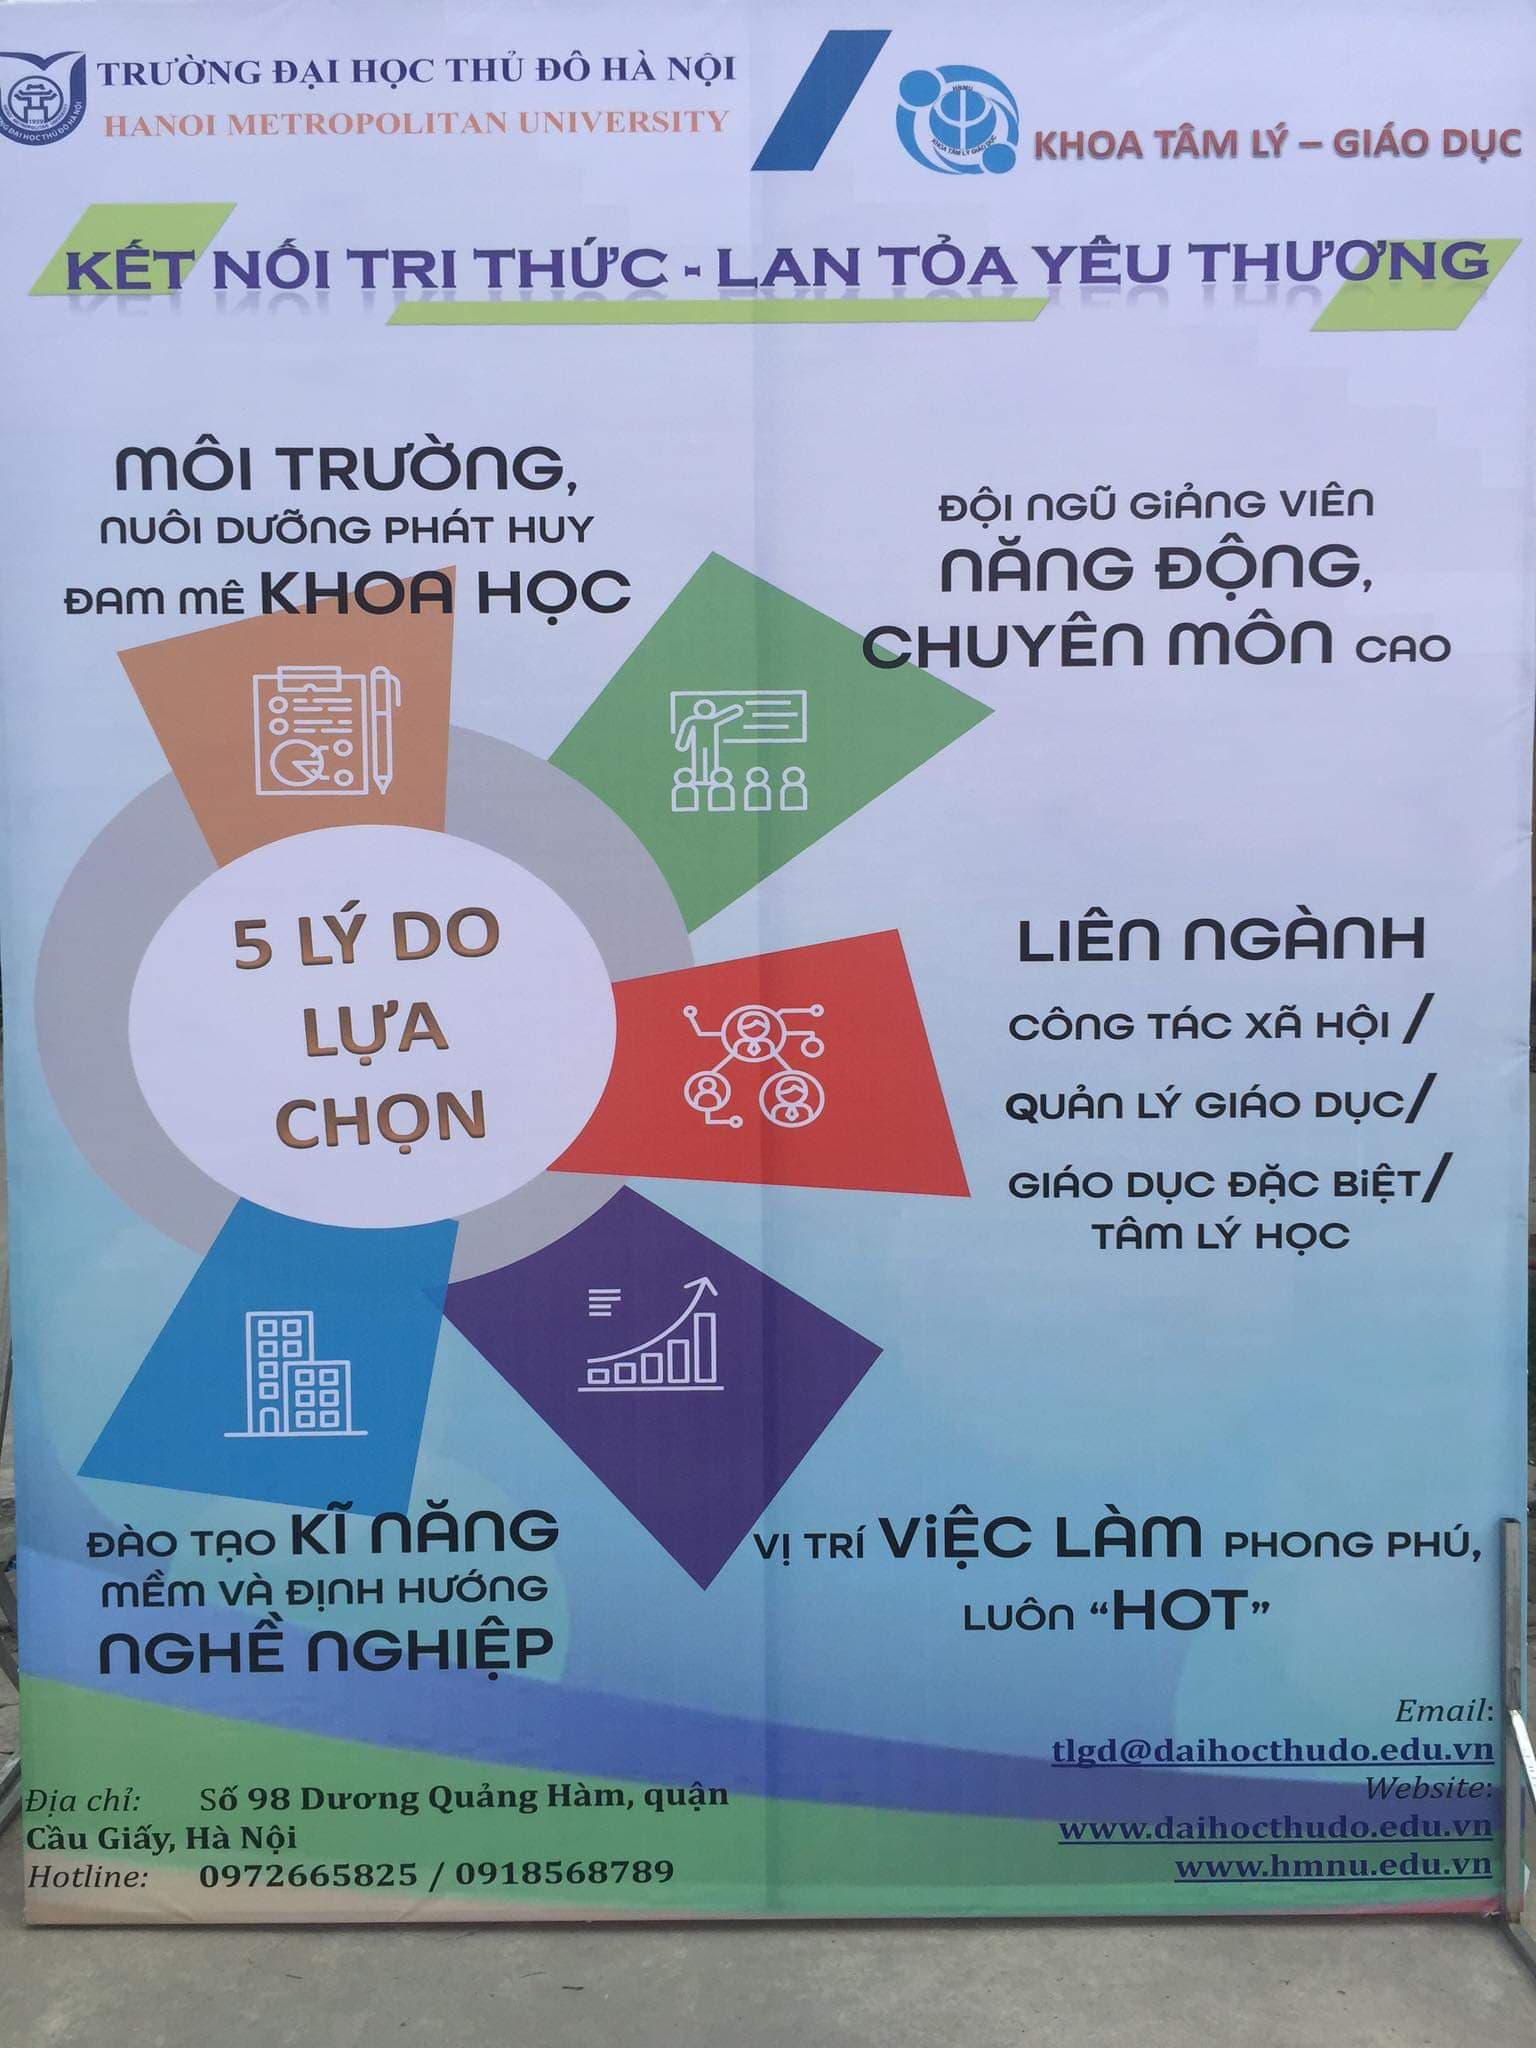 Khoa Tâm lý Giáo dục - Trường ĐH Thủ đô Hà Nội tuyển sinh năm 2019-2020